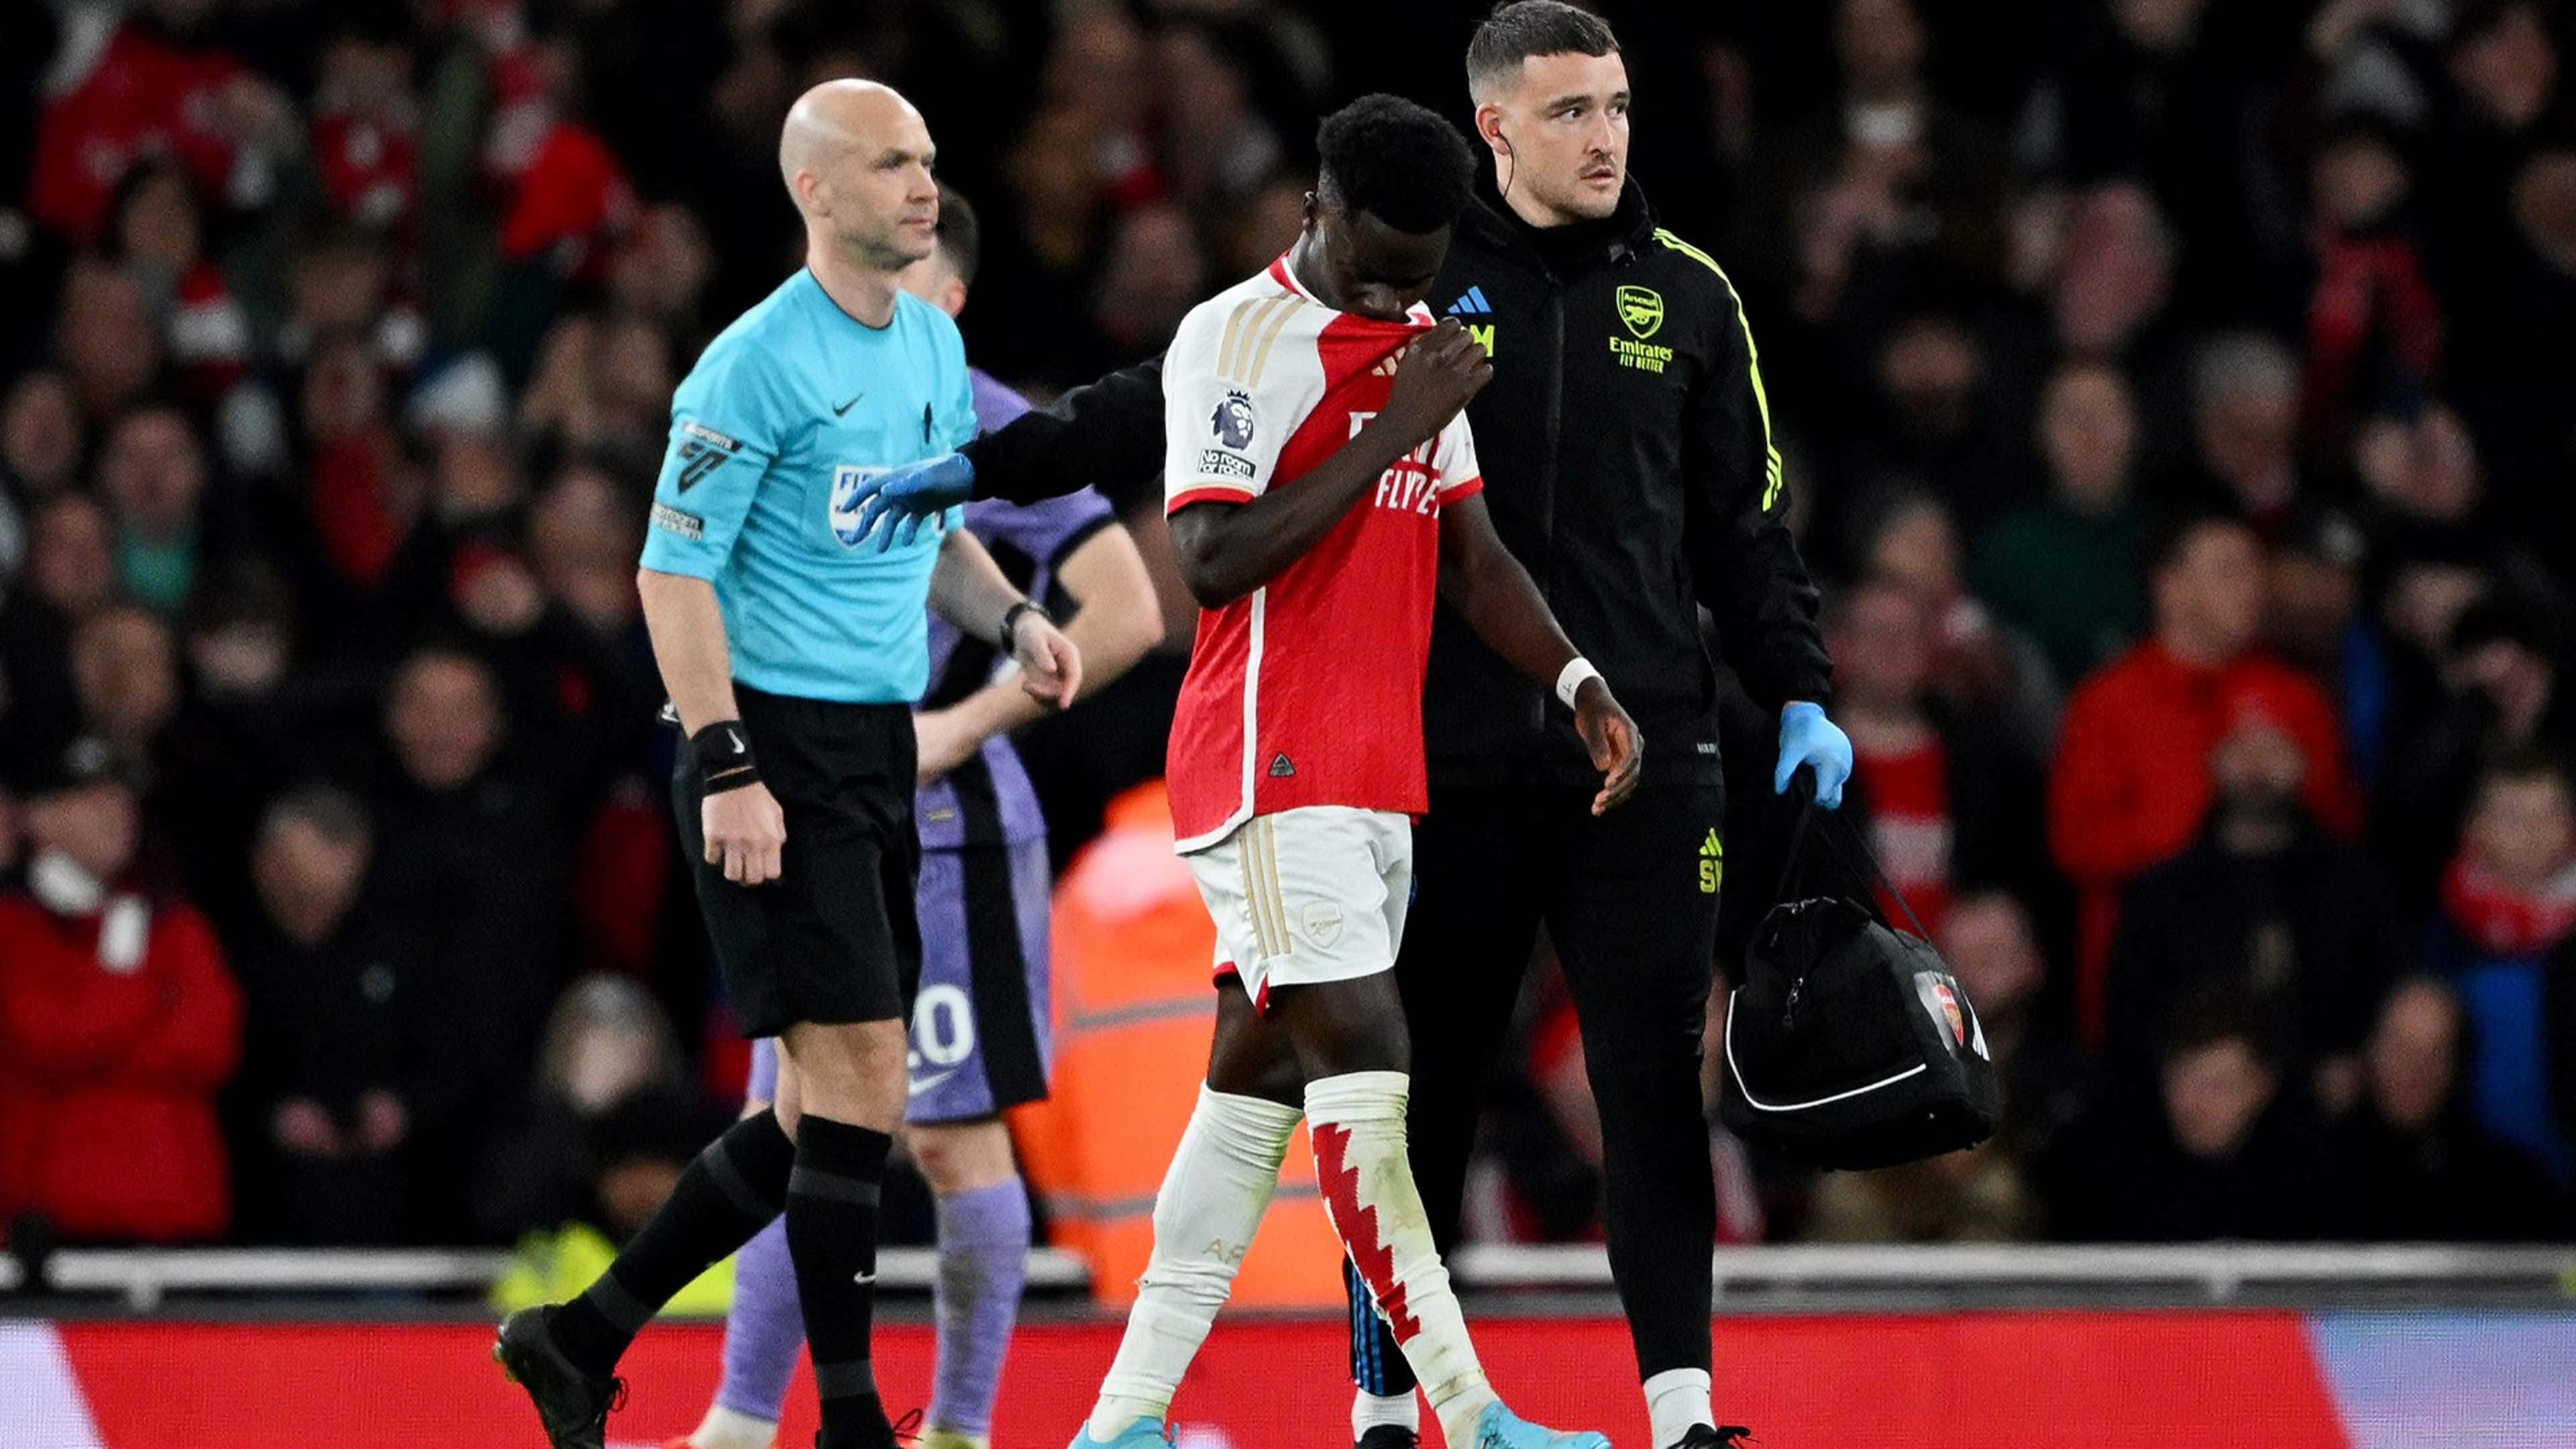 Saka Arsenal injury